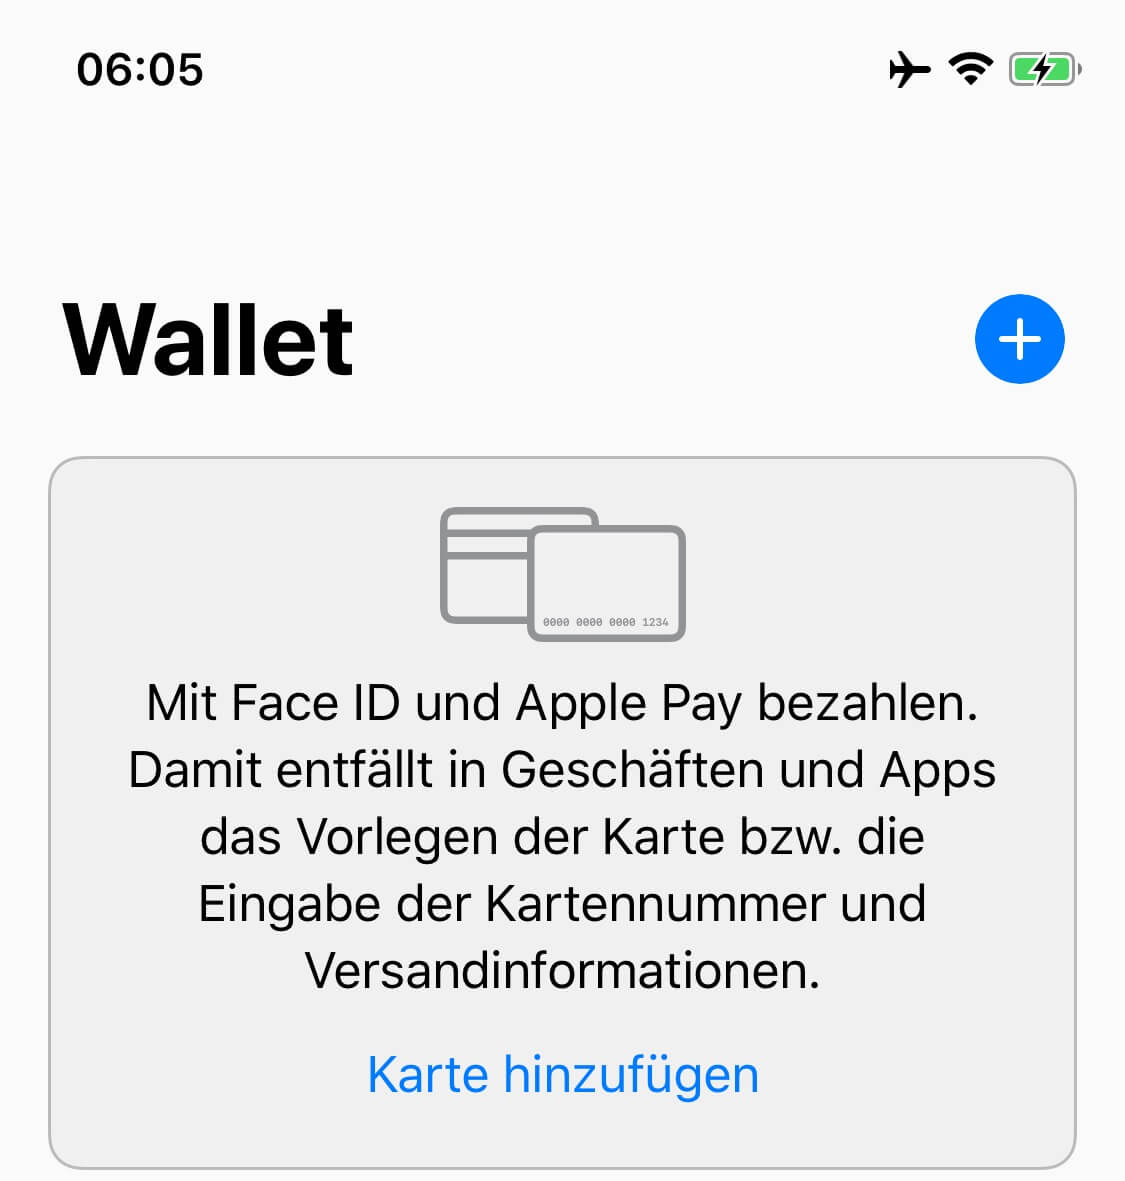 Apple Pay Wallet hinzufügen